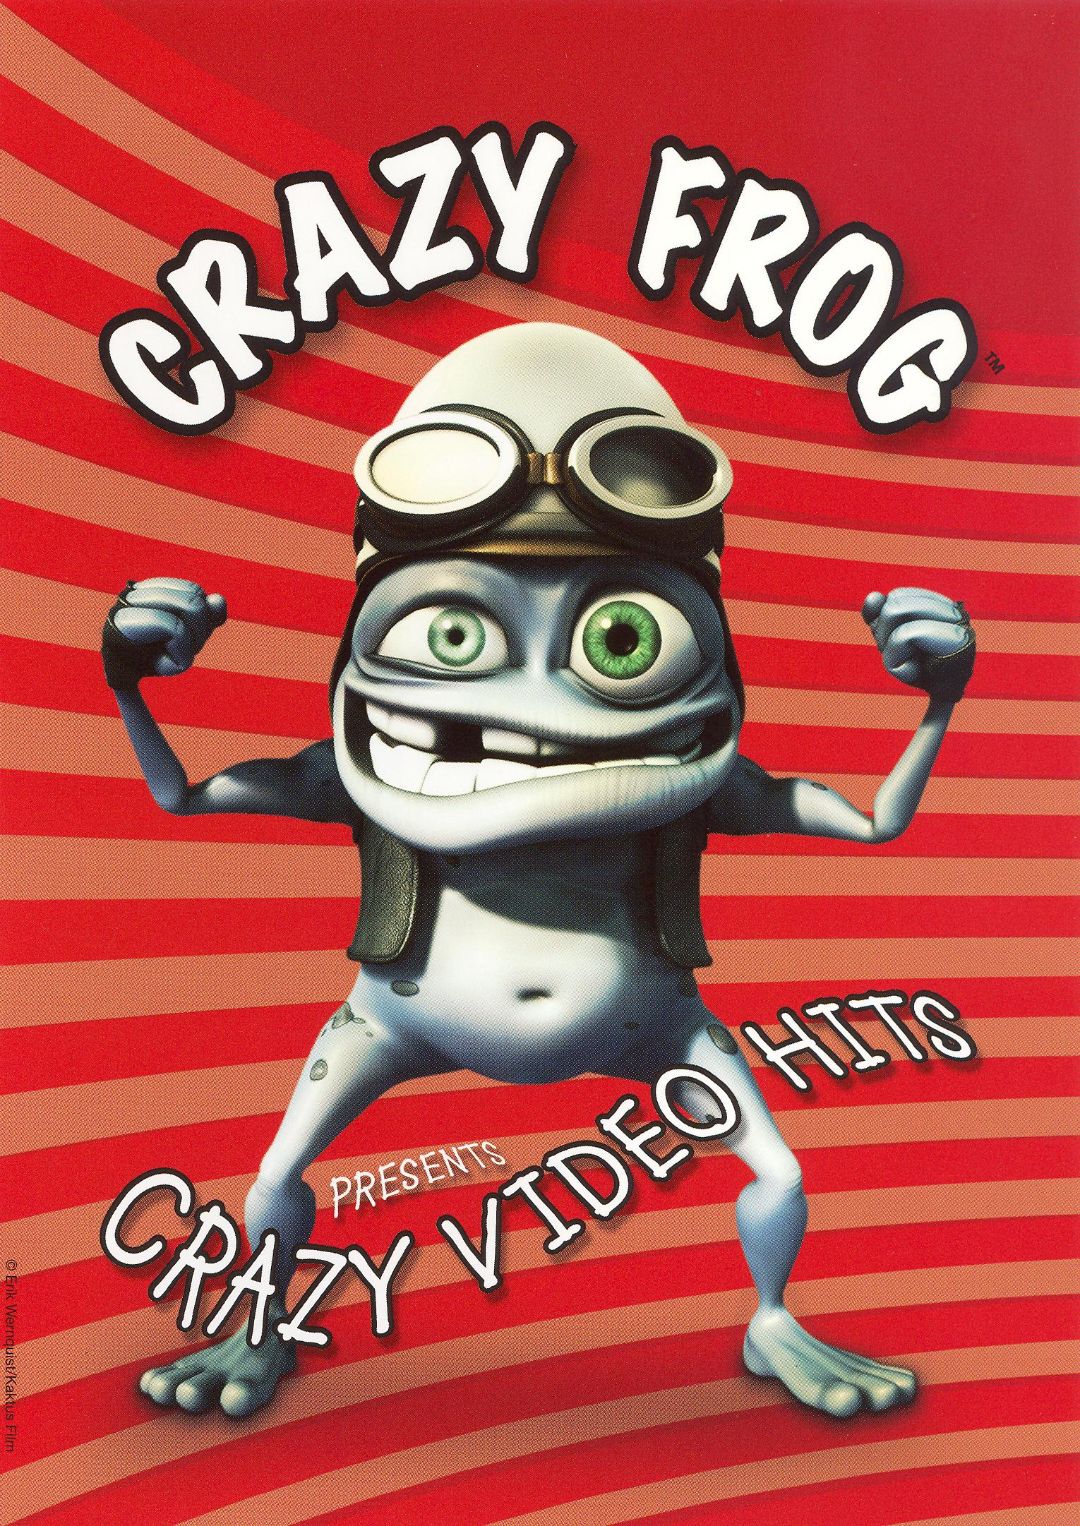 Crazy Frog - Presents Crazy Hits JAPAN CD TOCP-70055 #101-2